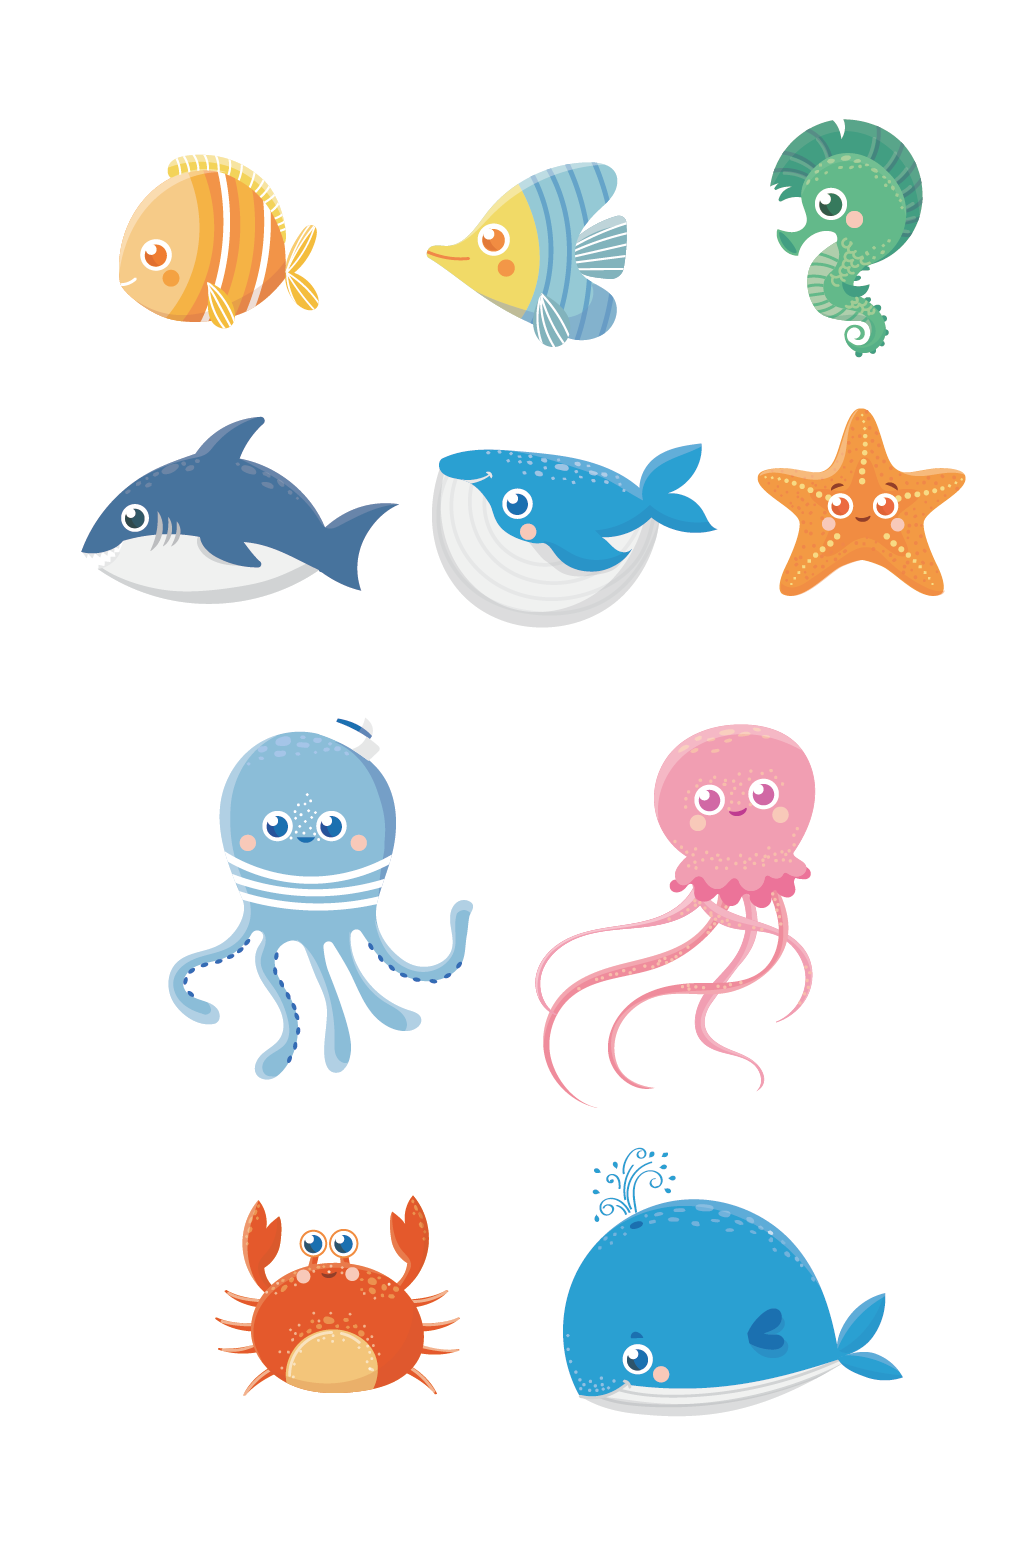 海豚可爱手绘动漫卡通素材立即下载卡通手绘鱼背景海报设计海洋鱼群